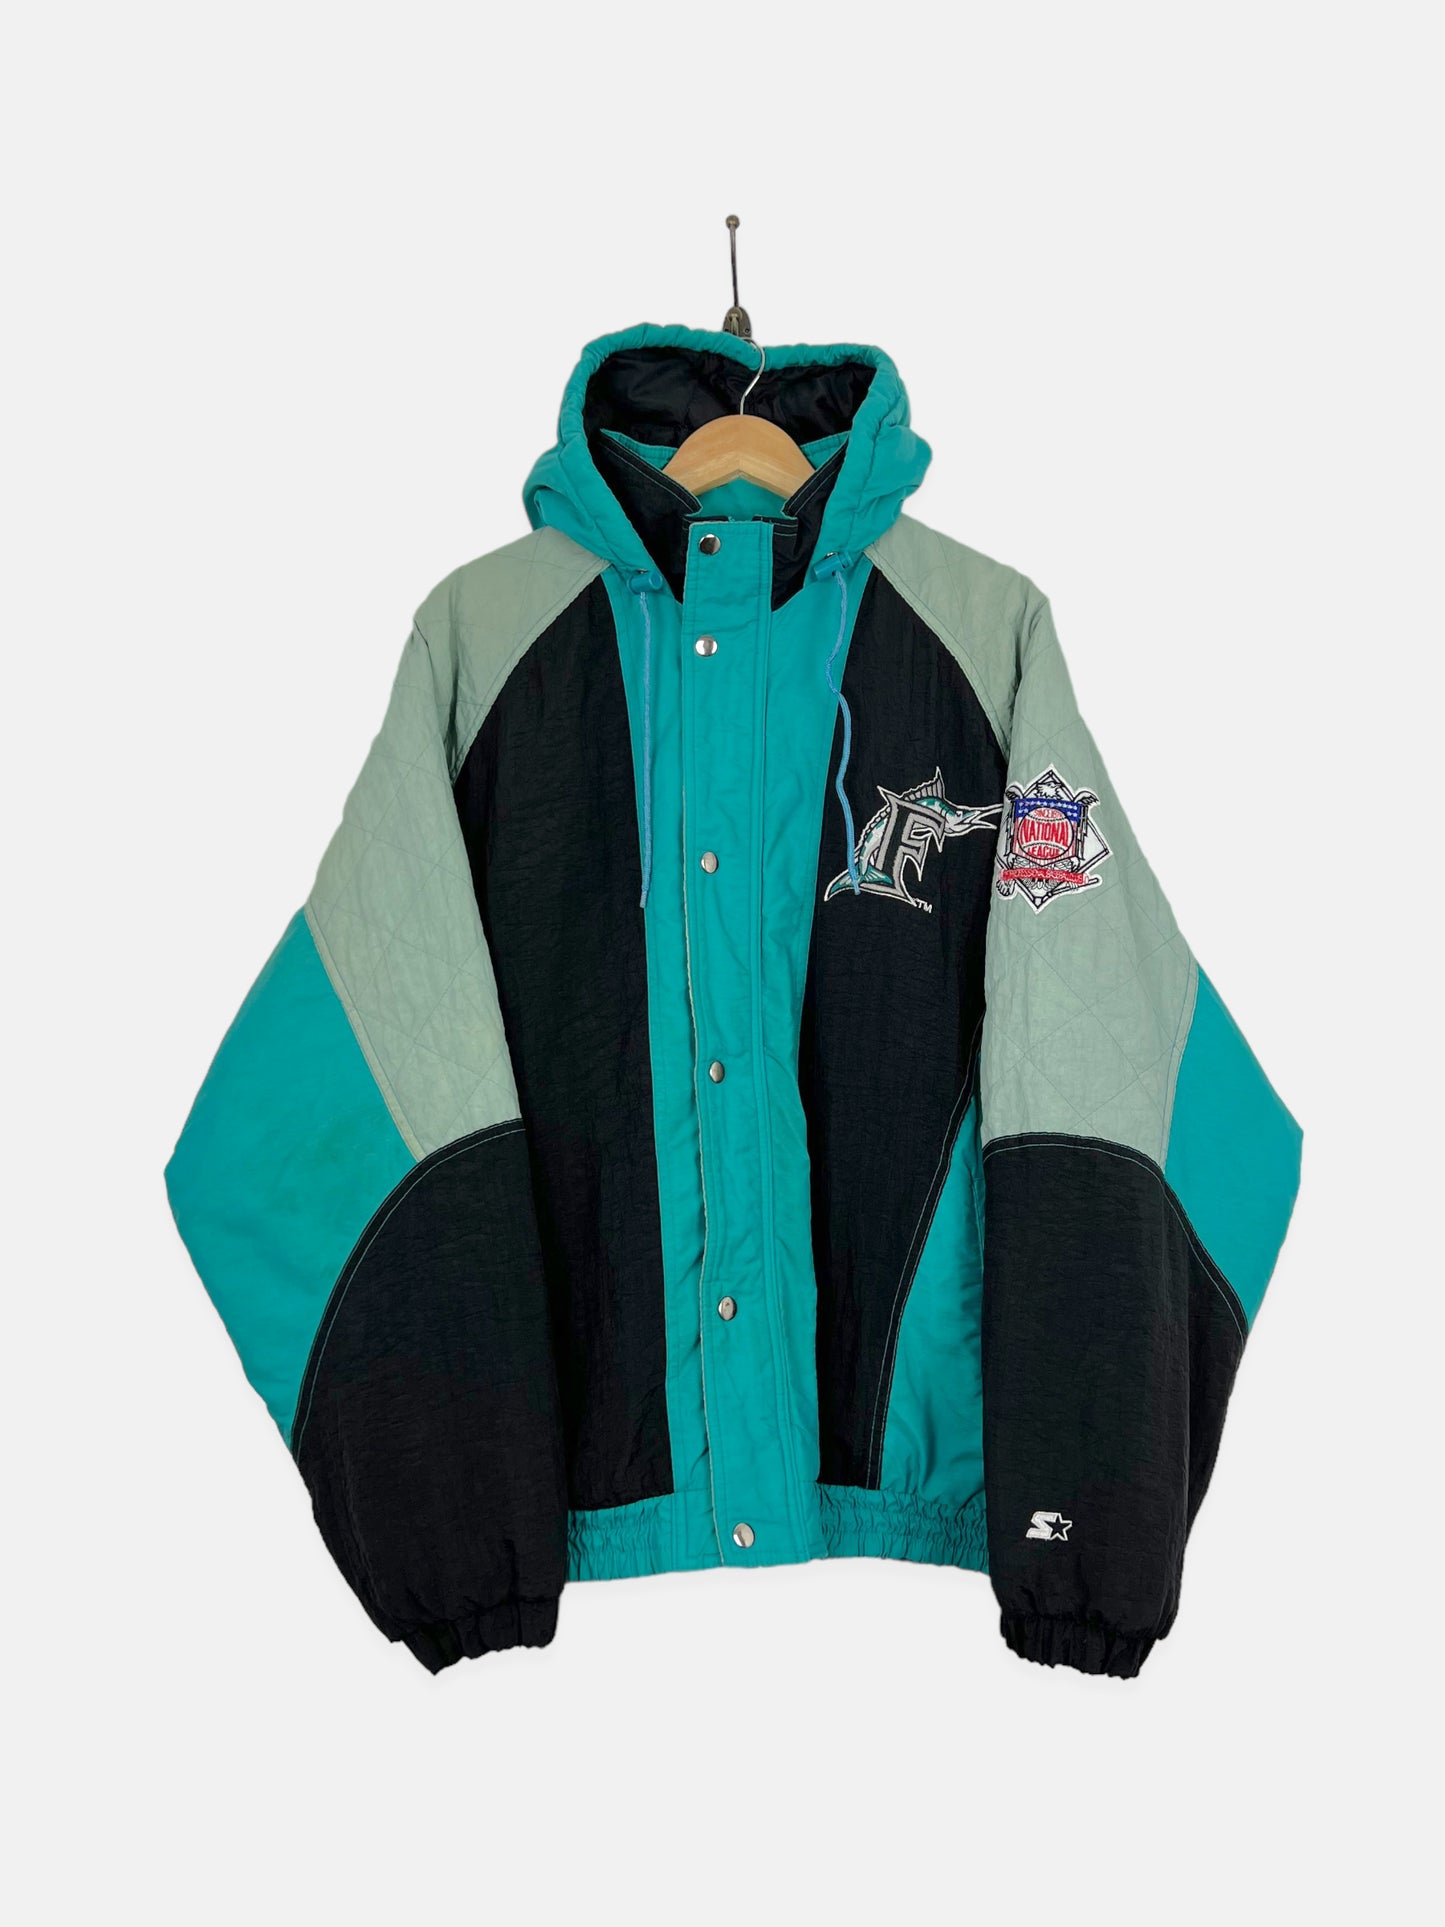 90's Florida Marlins Starter MLB Embroidered Vintage Puffer Jacket Size L-XL